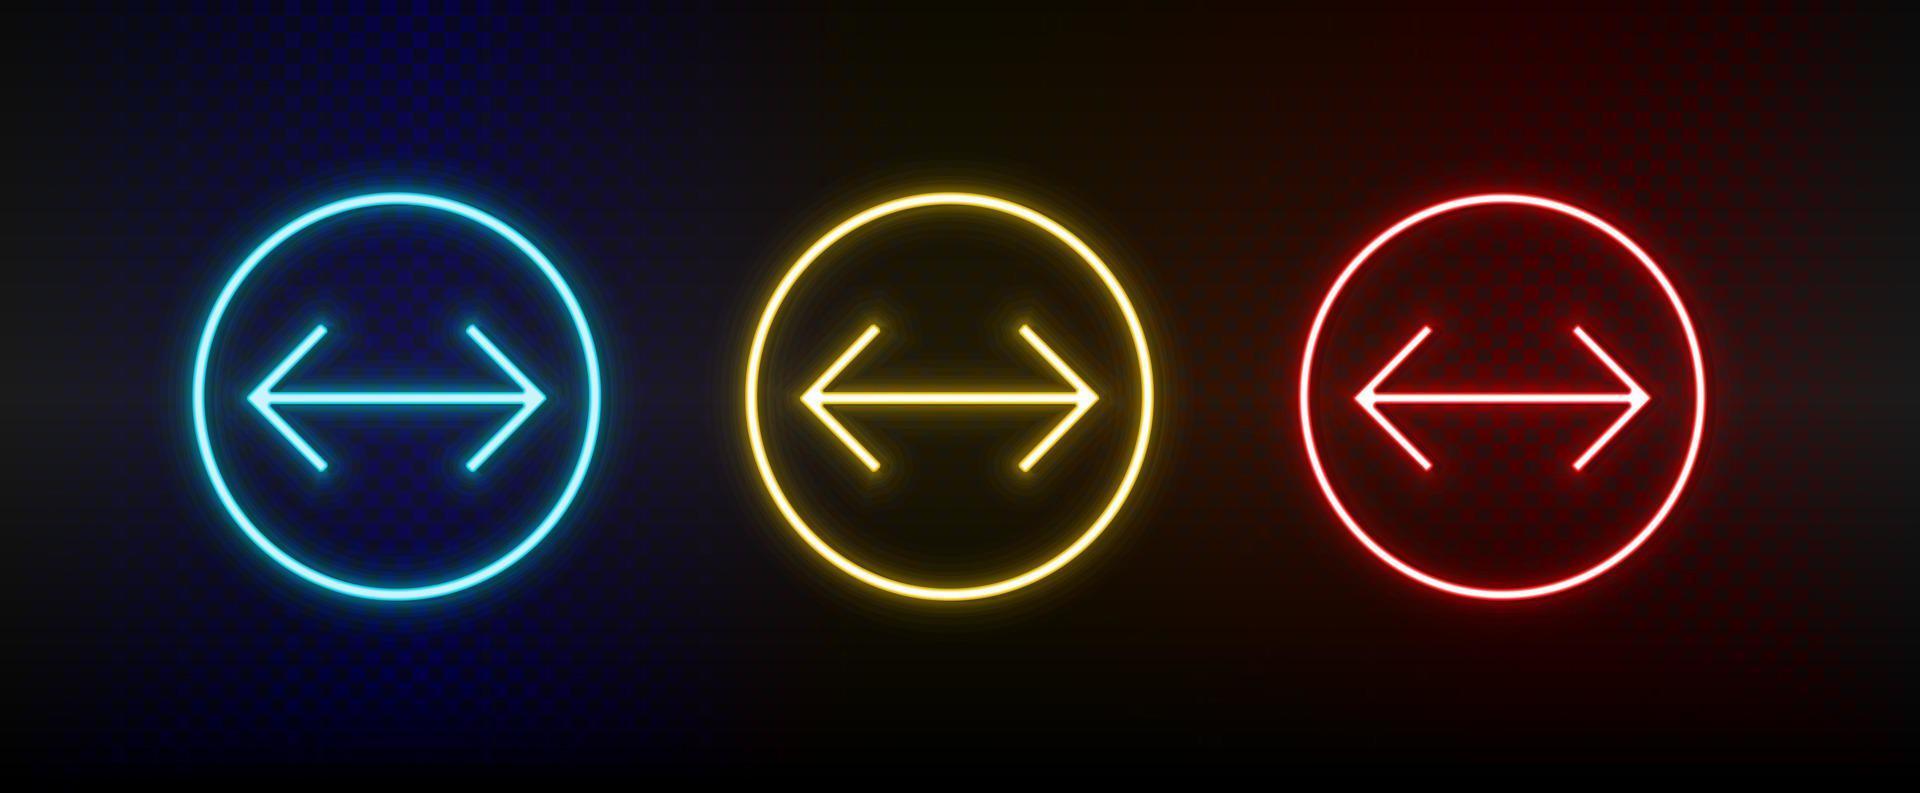 iconos de neón. flecha de interfaz de usuario conjunto de icono de vector de neón rojo, azul, amarillo sobre fondo oscuro